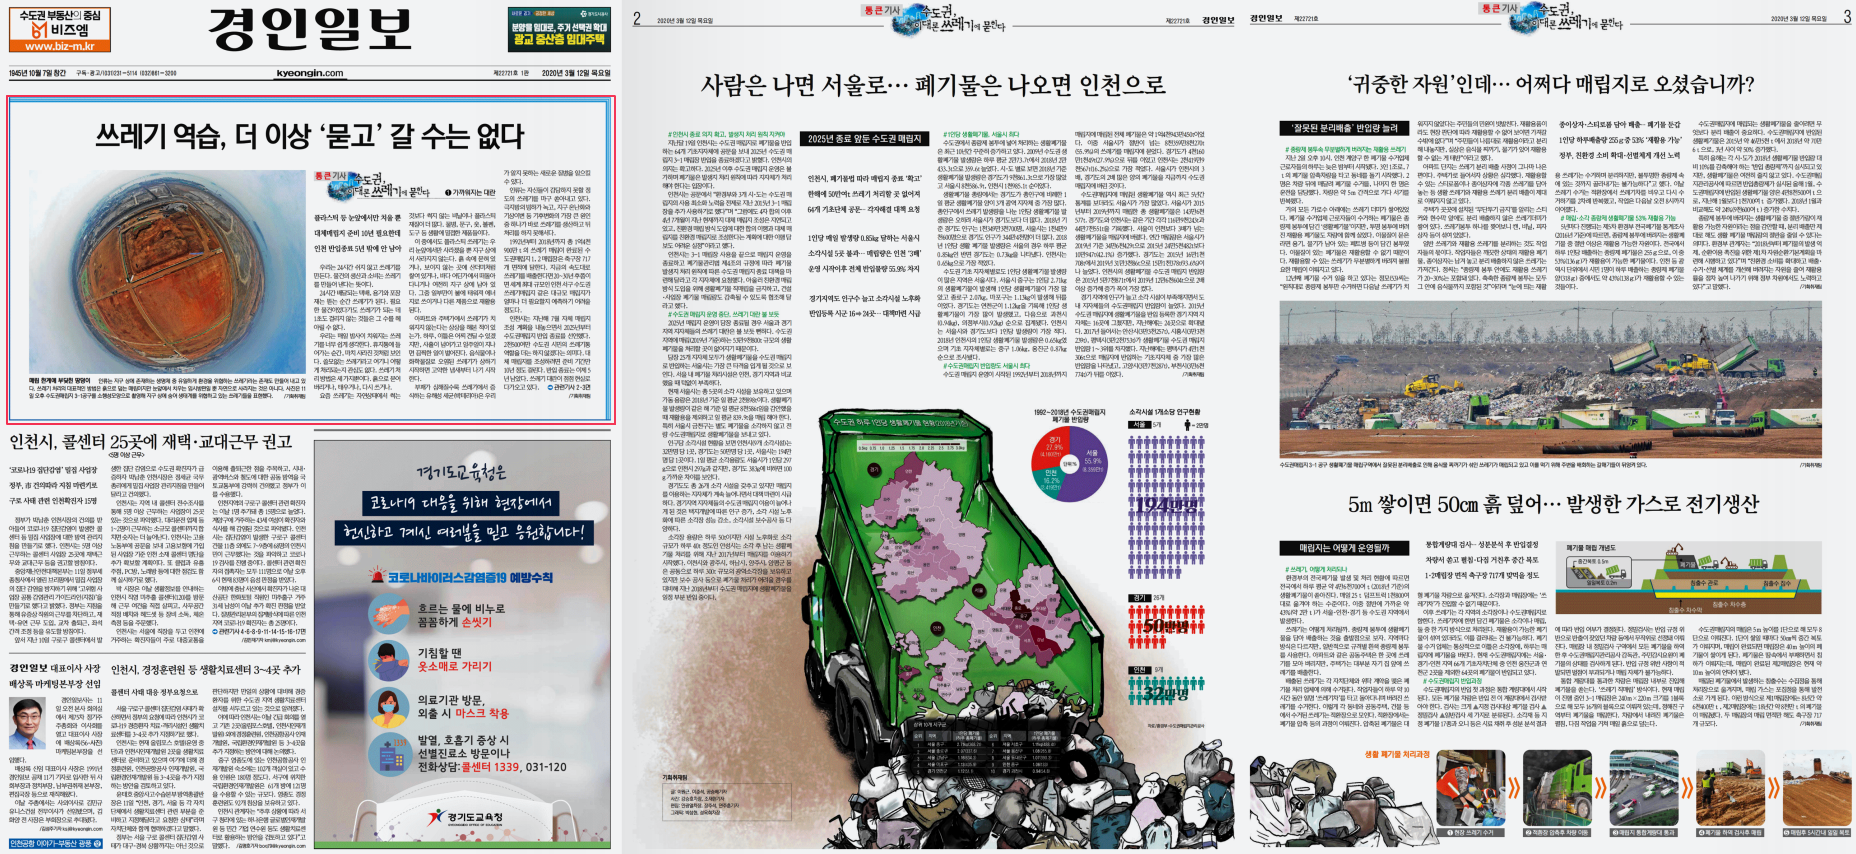 경인일보 12일 1-3면 쓰레기에 묻힌다.png